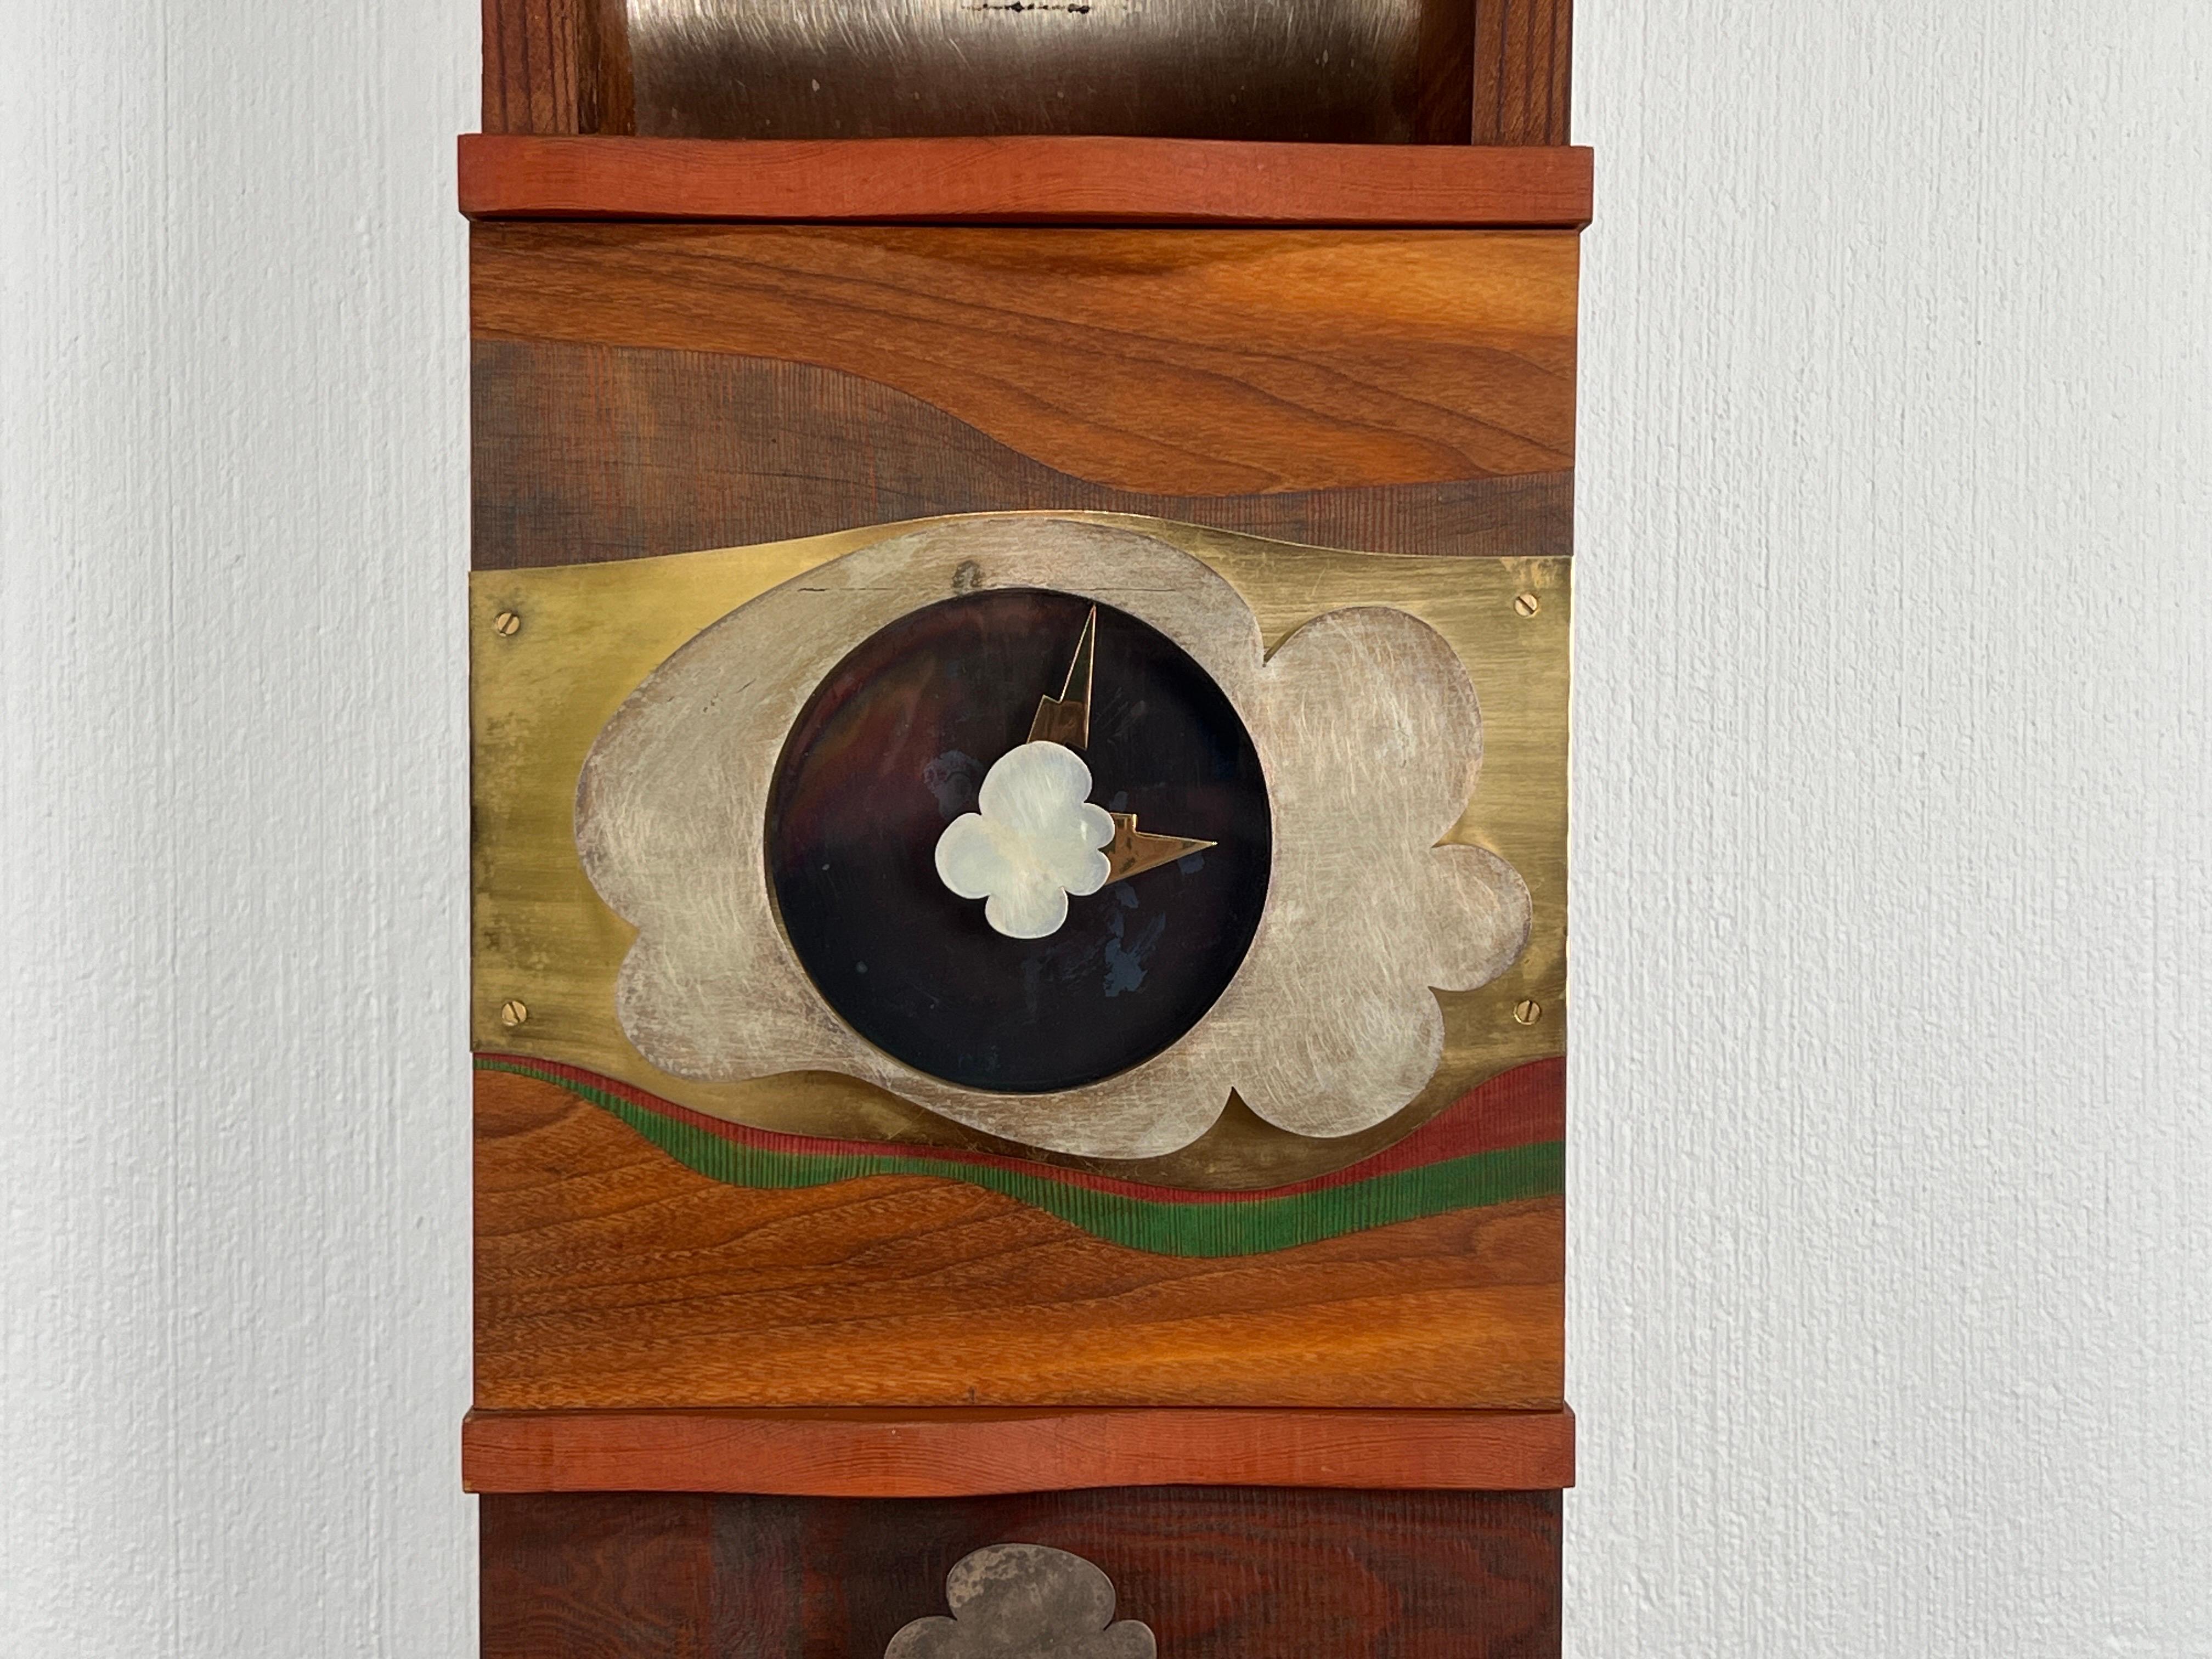 El artista californiano Garry Knox Bennett (1934-2022), más conocido por sus caprichosos muebles artísticos, empezó haciendo joyas a finales de los años sesenta. A principios de la década de 1970 ya había empezado a trabajar con piezas de mayor